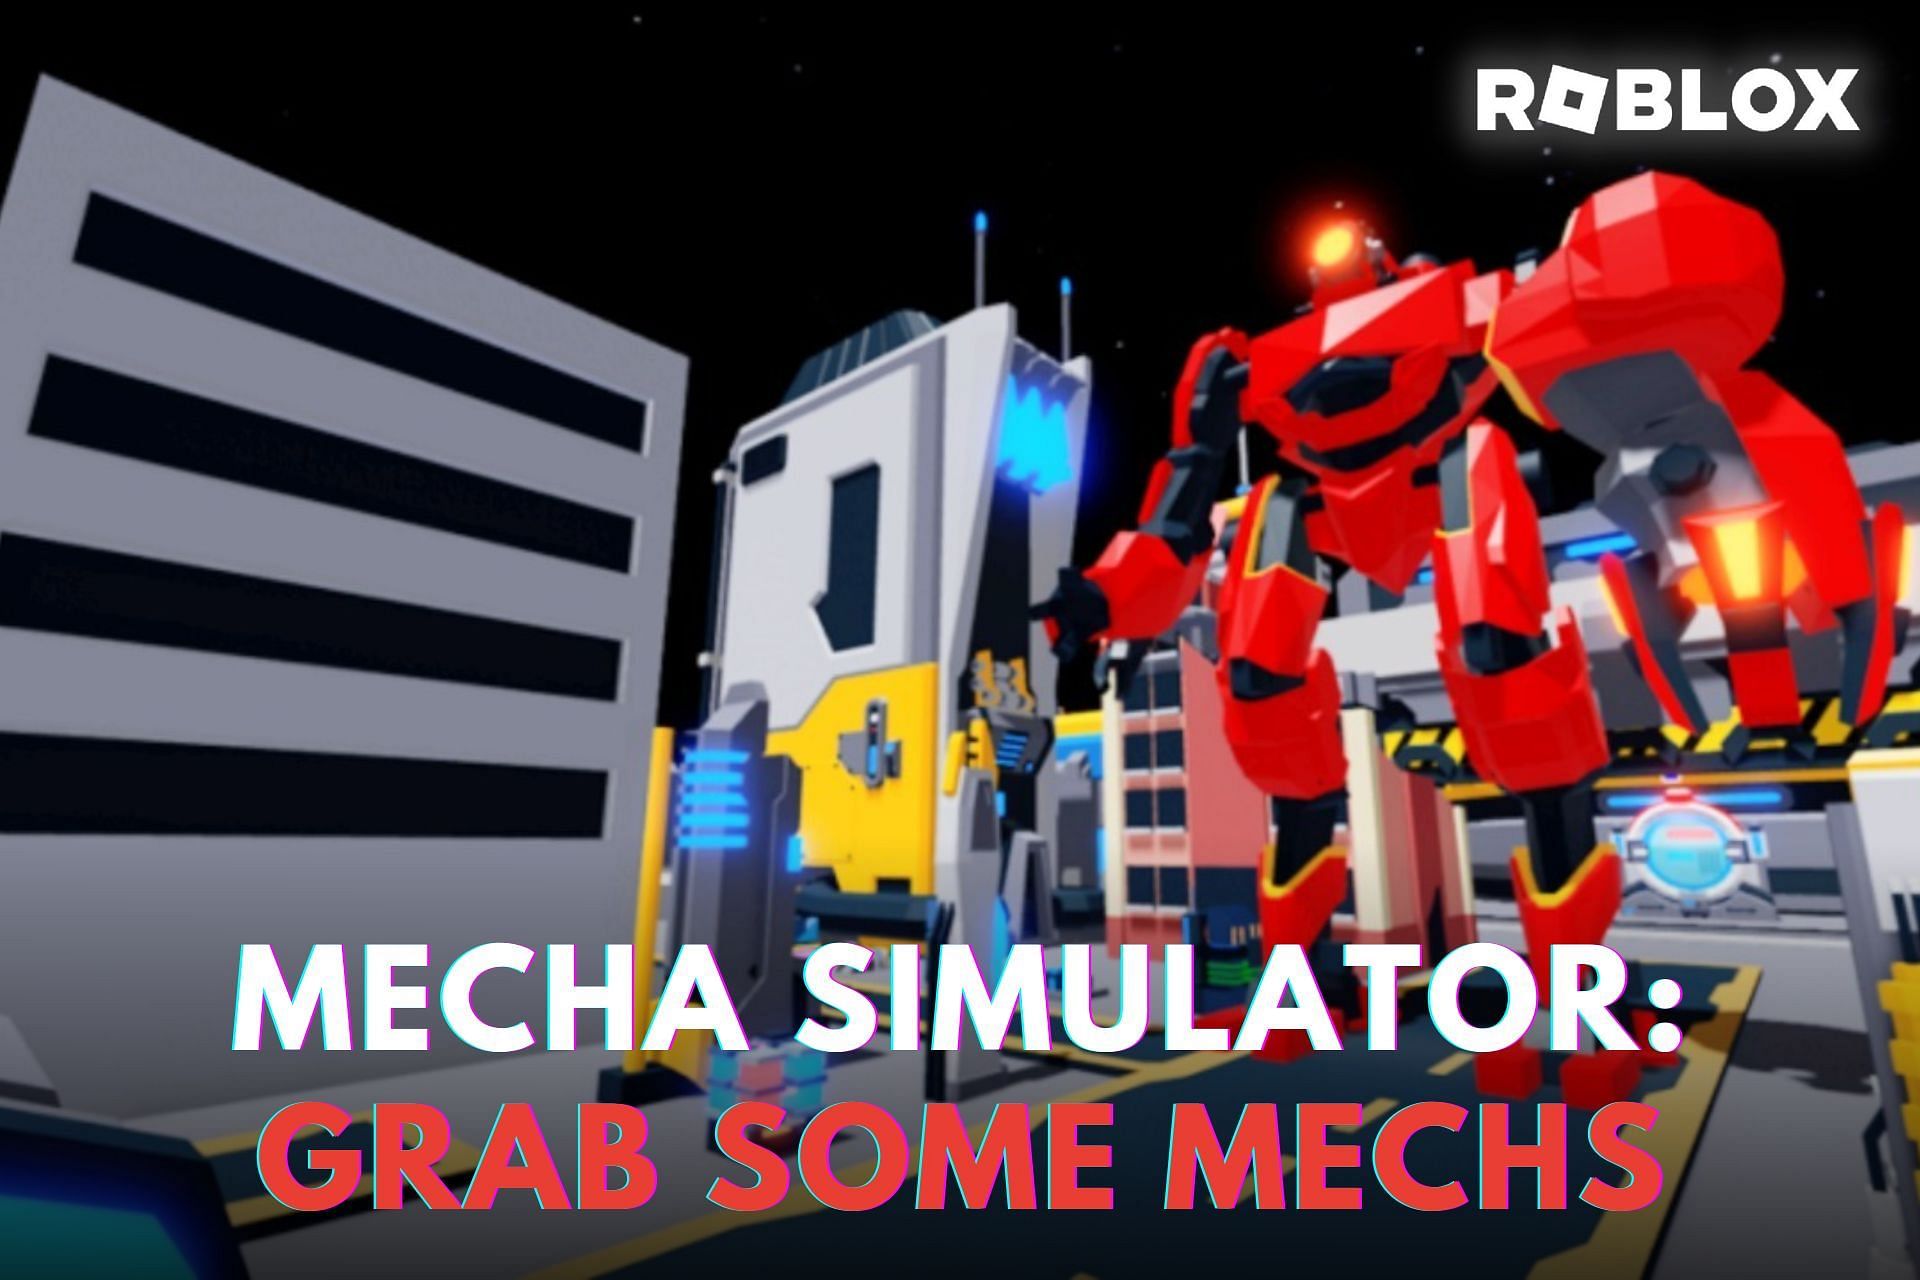 Roblox Mecha Simulator : Grab Some Mechs. (Image via Roblox)